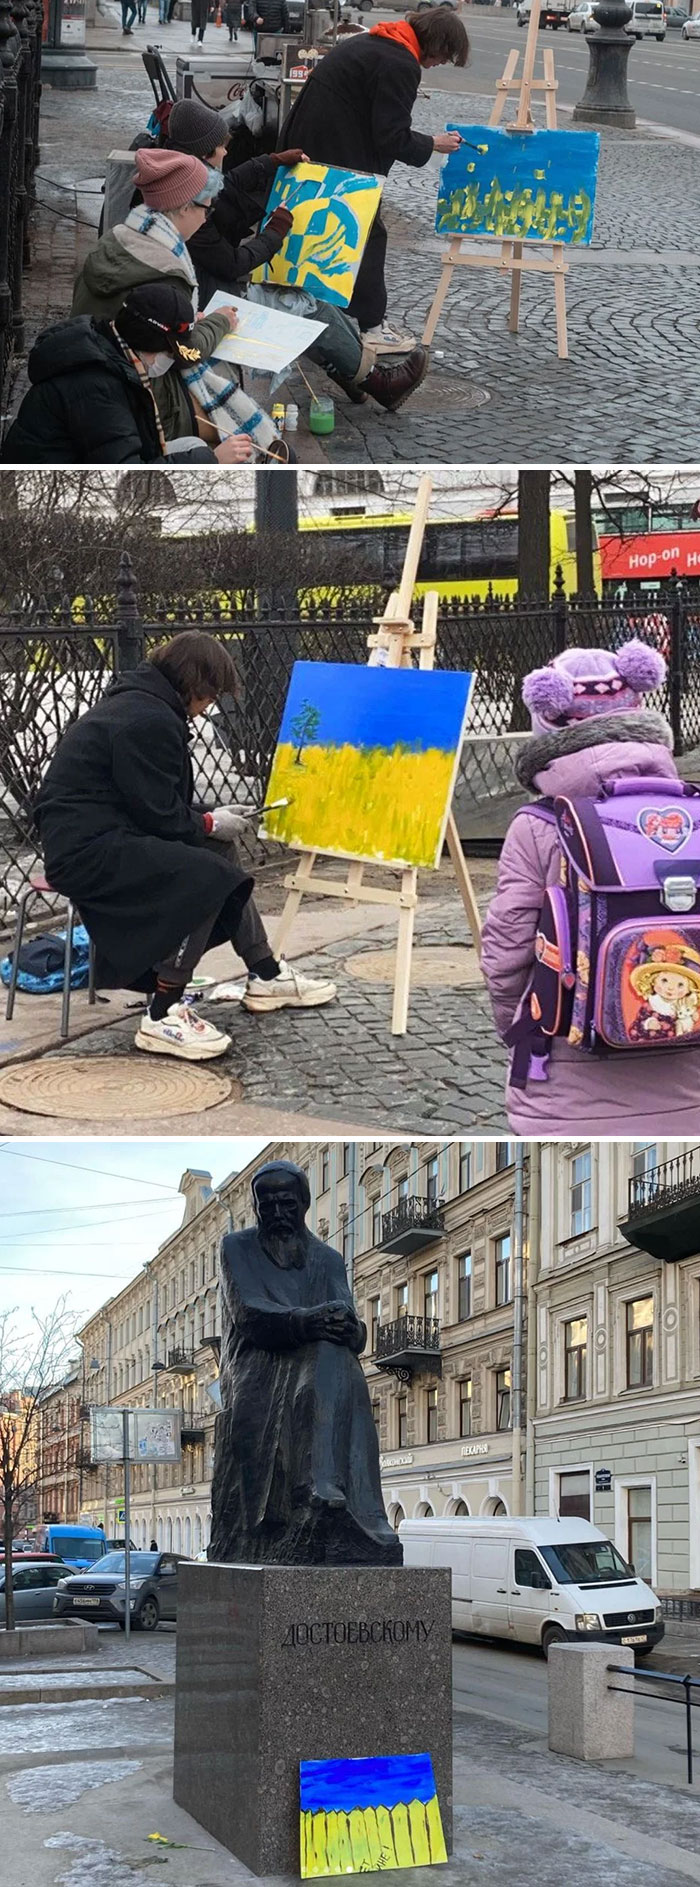 Las protestas no autorizadas están prohibidas en Rusia, así que los artistas de San Petersburgo decidieron hacer algunas prácticas al aire libre